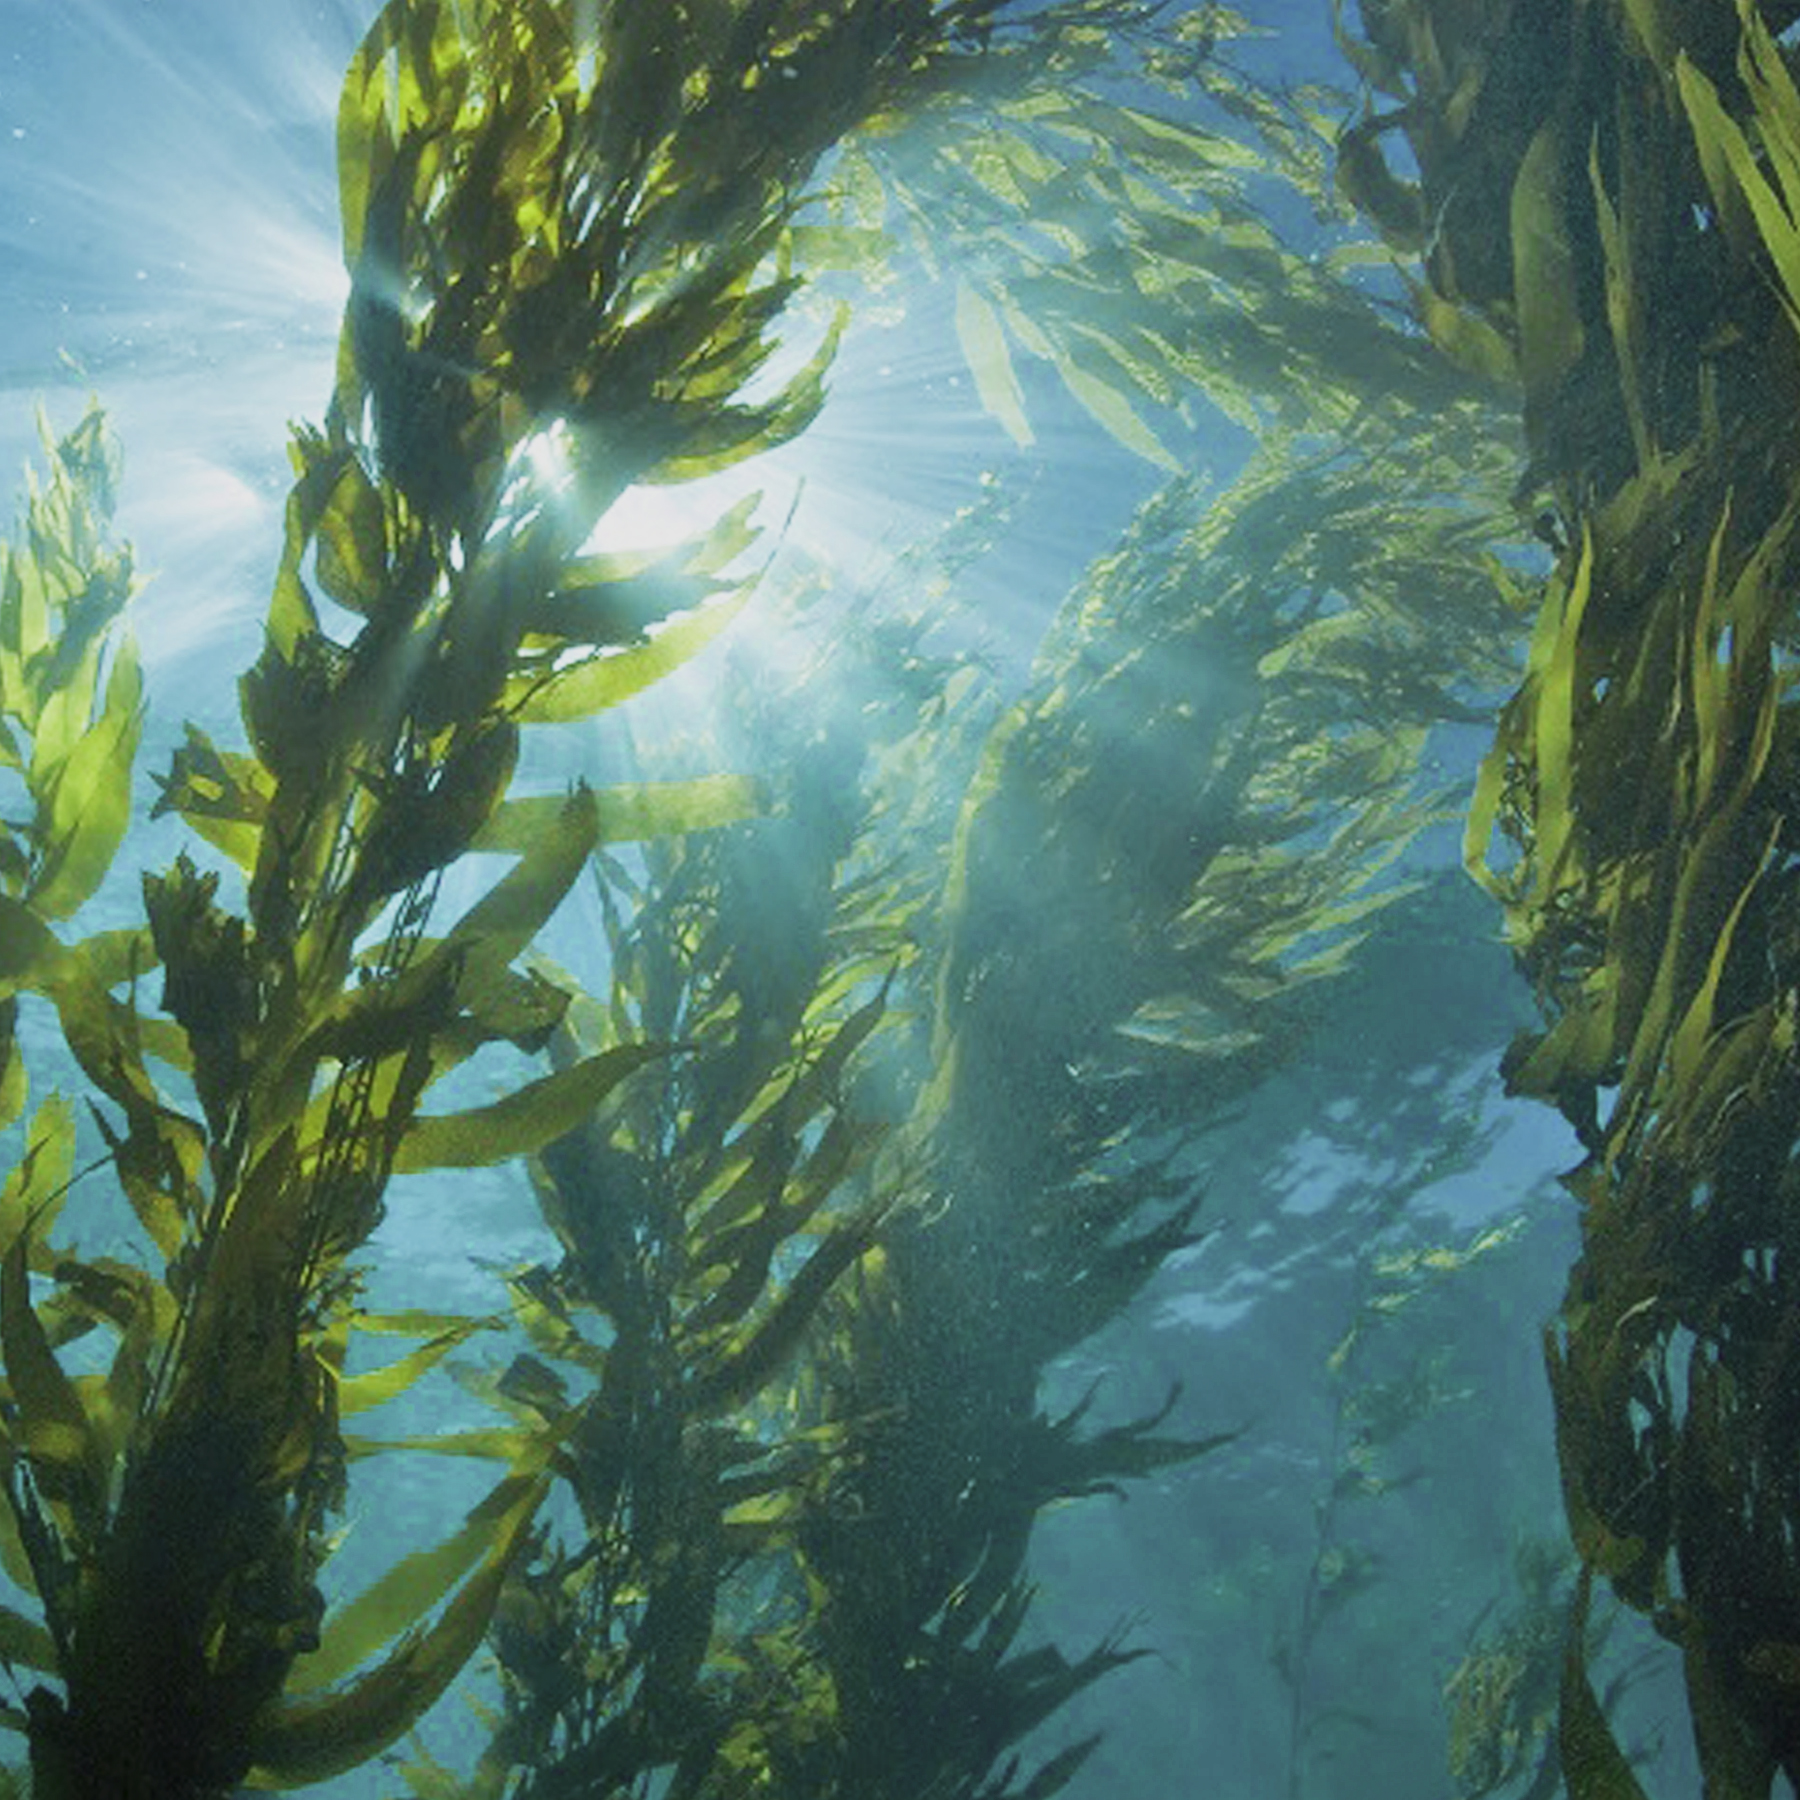 Algas marinas: Podrían alimentar al mundo - Solesteview